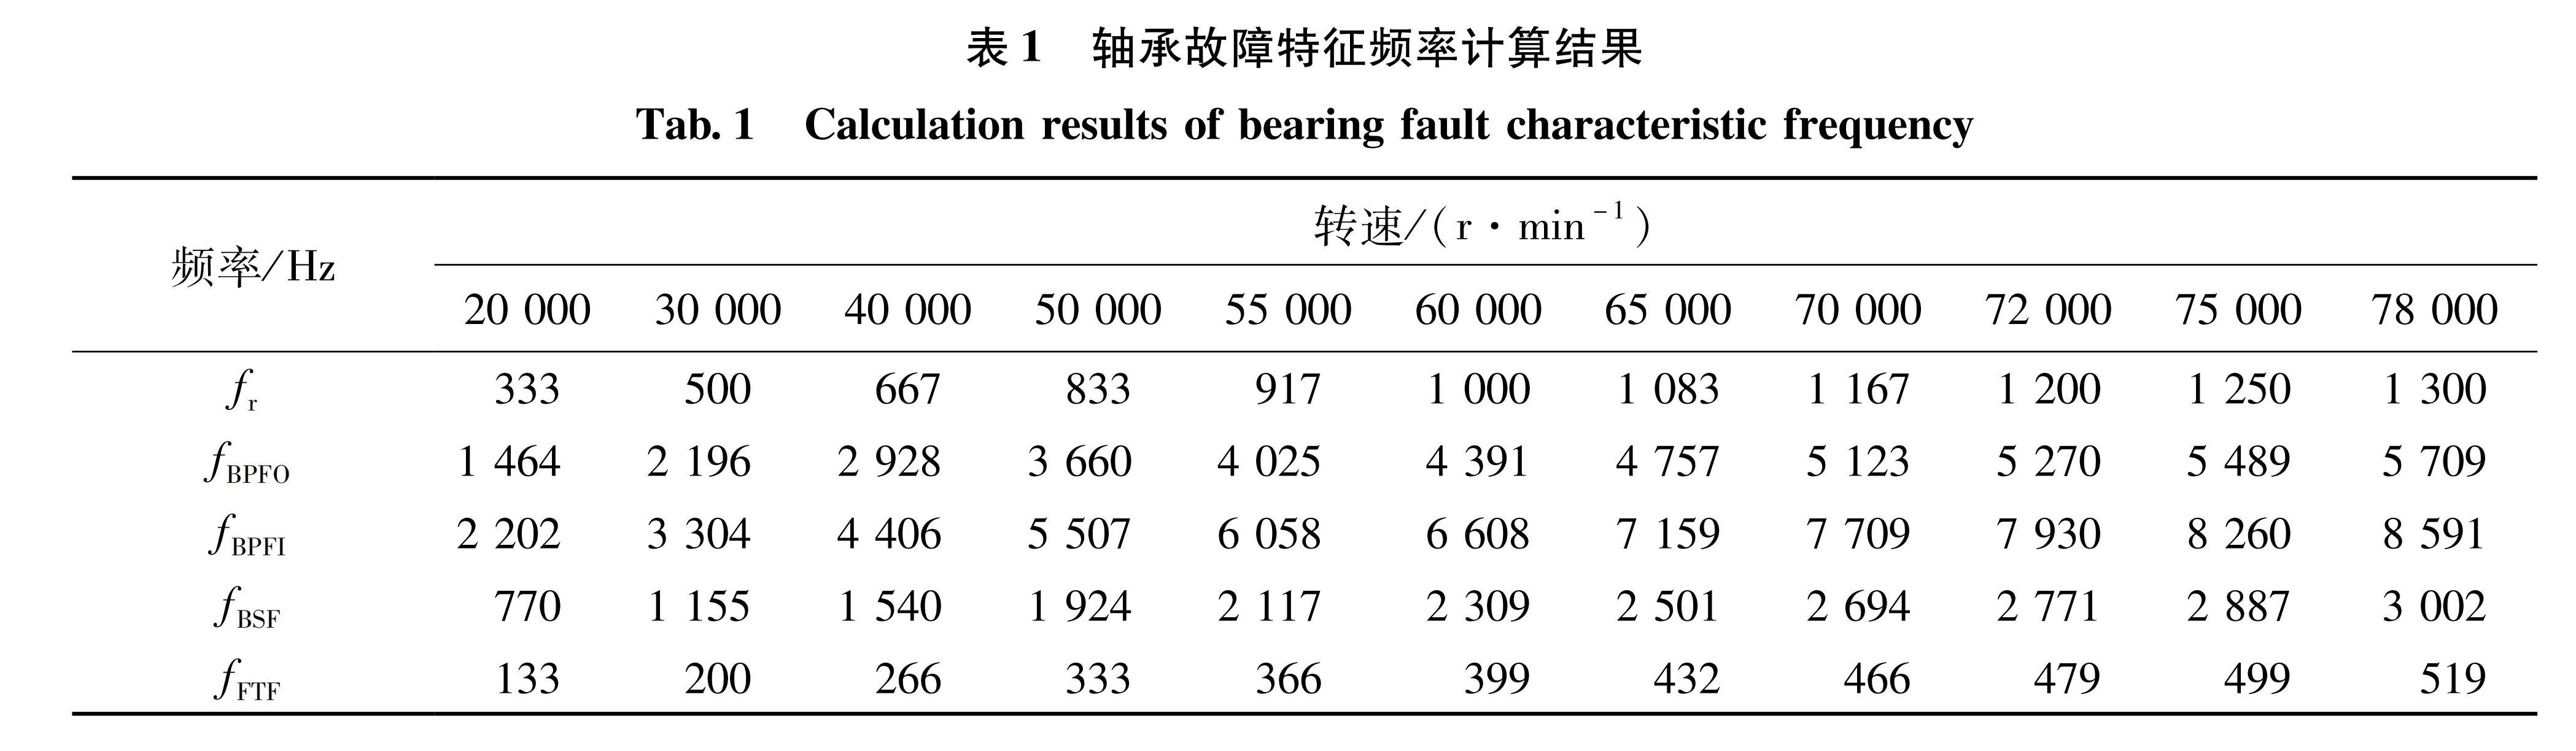 表1 轴承故障特征频率计算结果<br/>Tab.1 Calculation results of bearing fault characteristic frequency